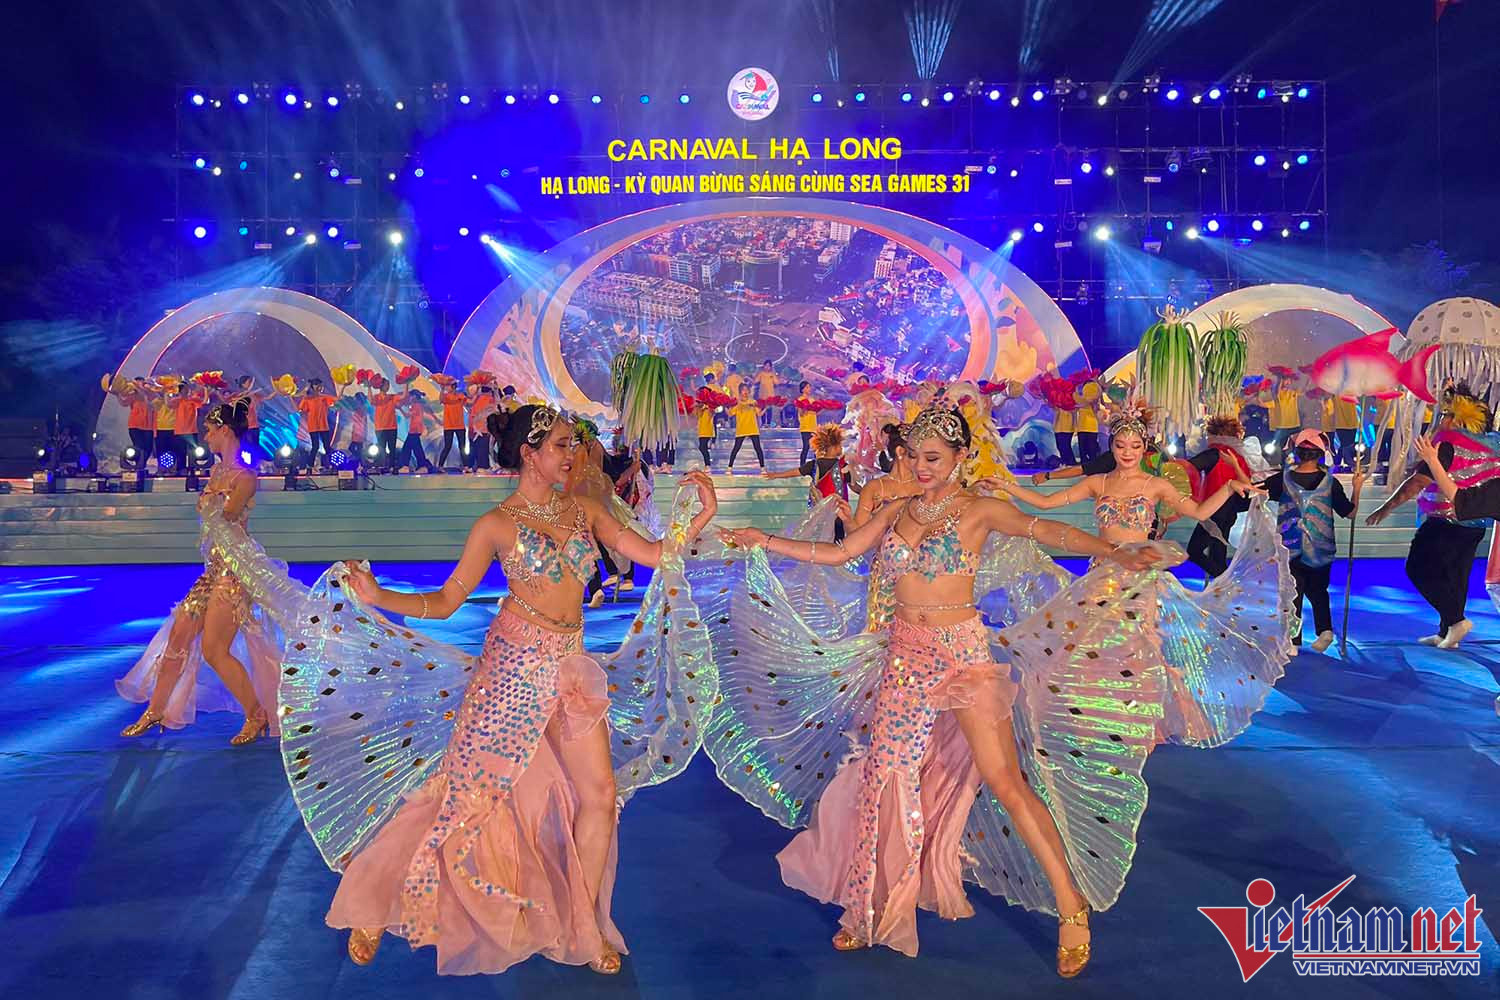 Carnaval Hạ Long 2022 - Kỳ quan bừng sáng cùng SEA Games 31